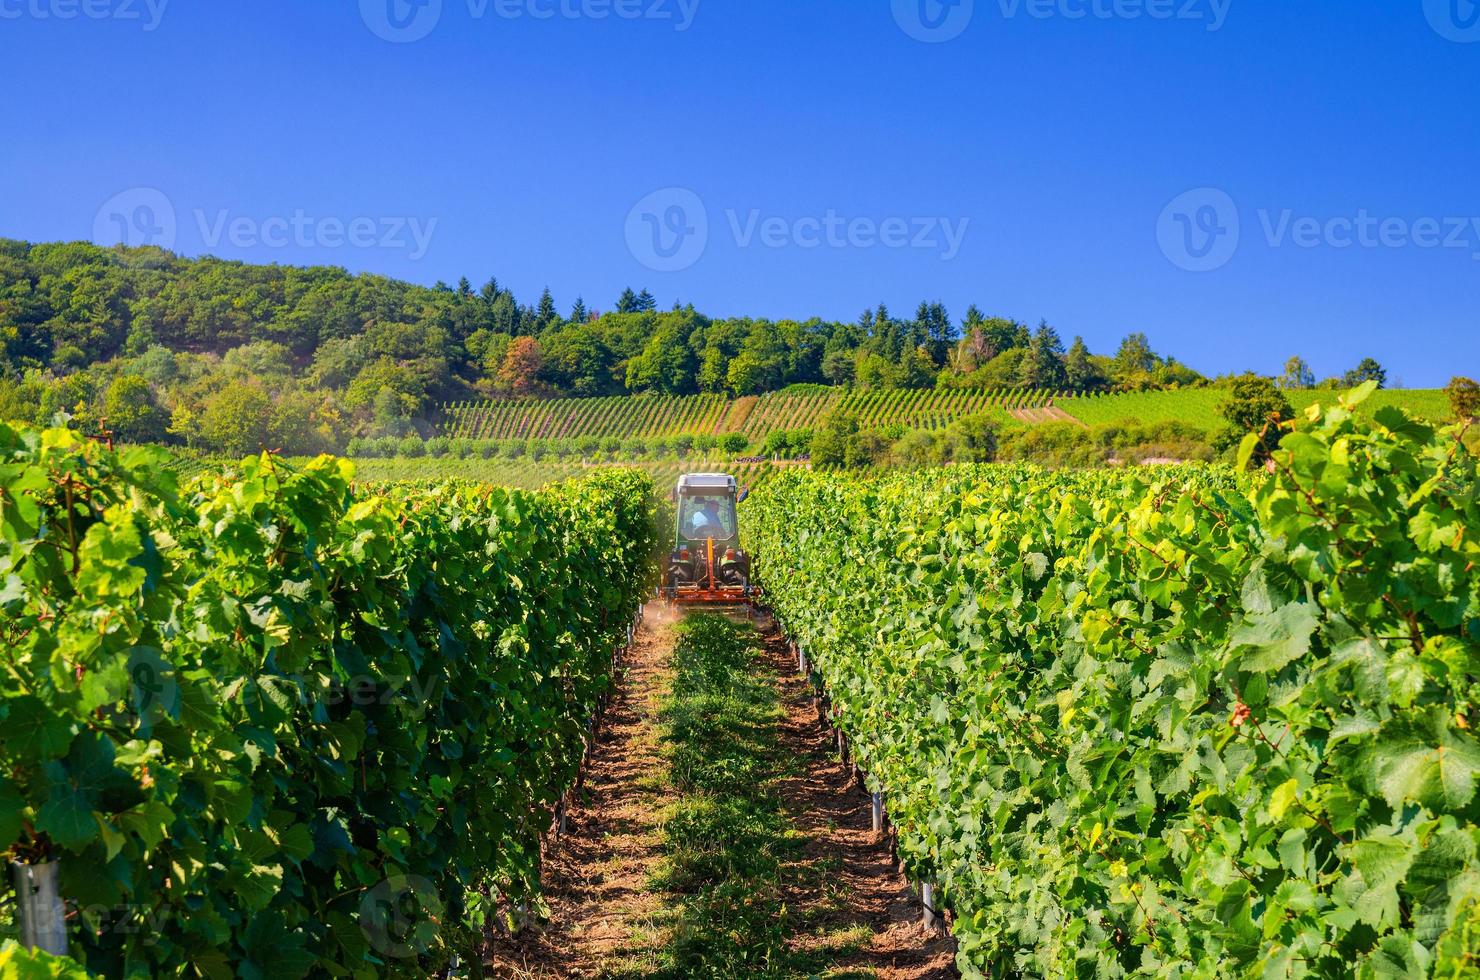 tracteur agricole travaillant dans des rangées de vignes champs verts avec treillis de vigne sur les collines de la vallée du rhin photo